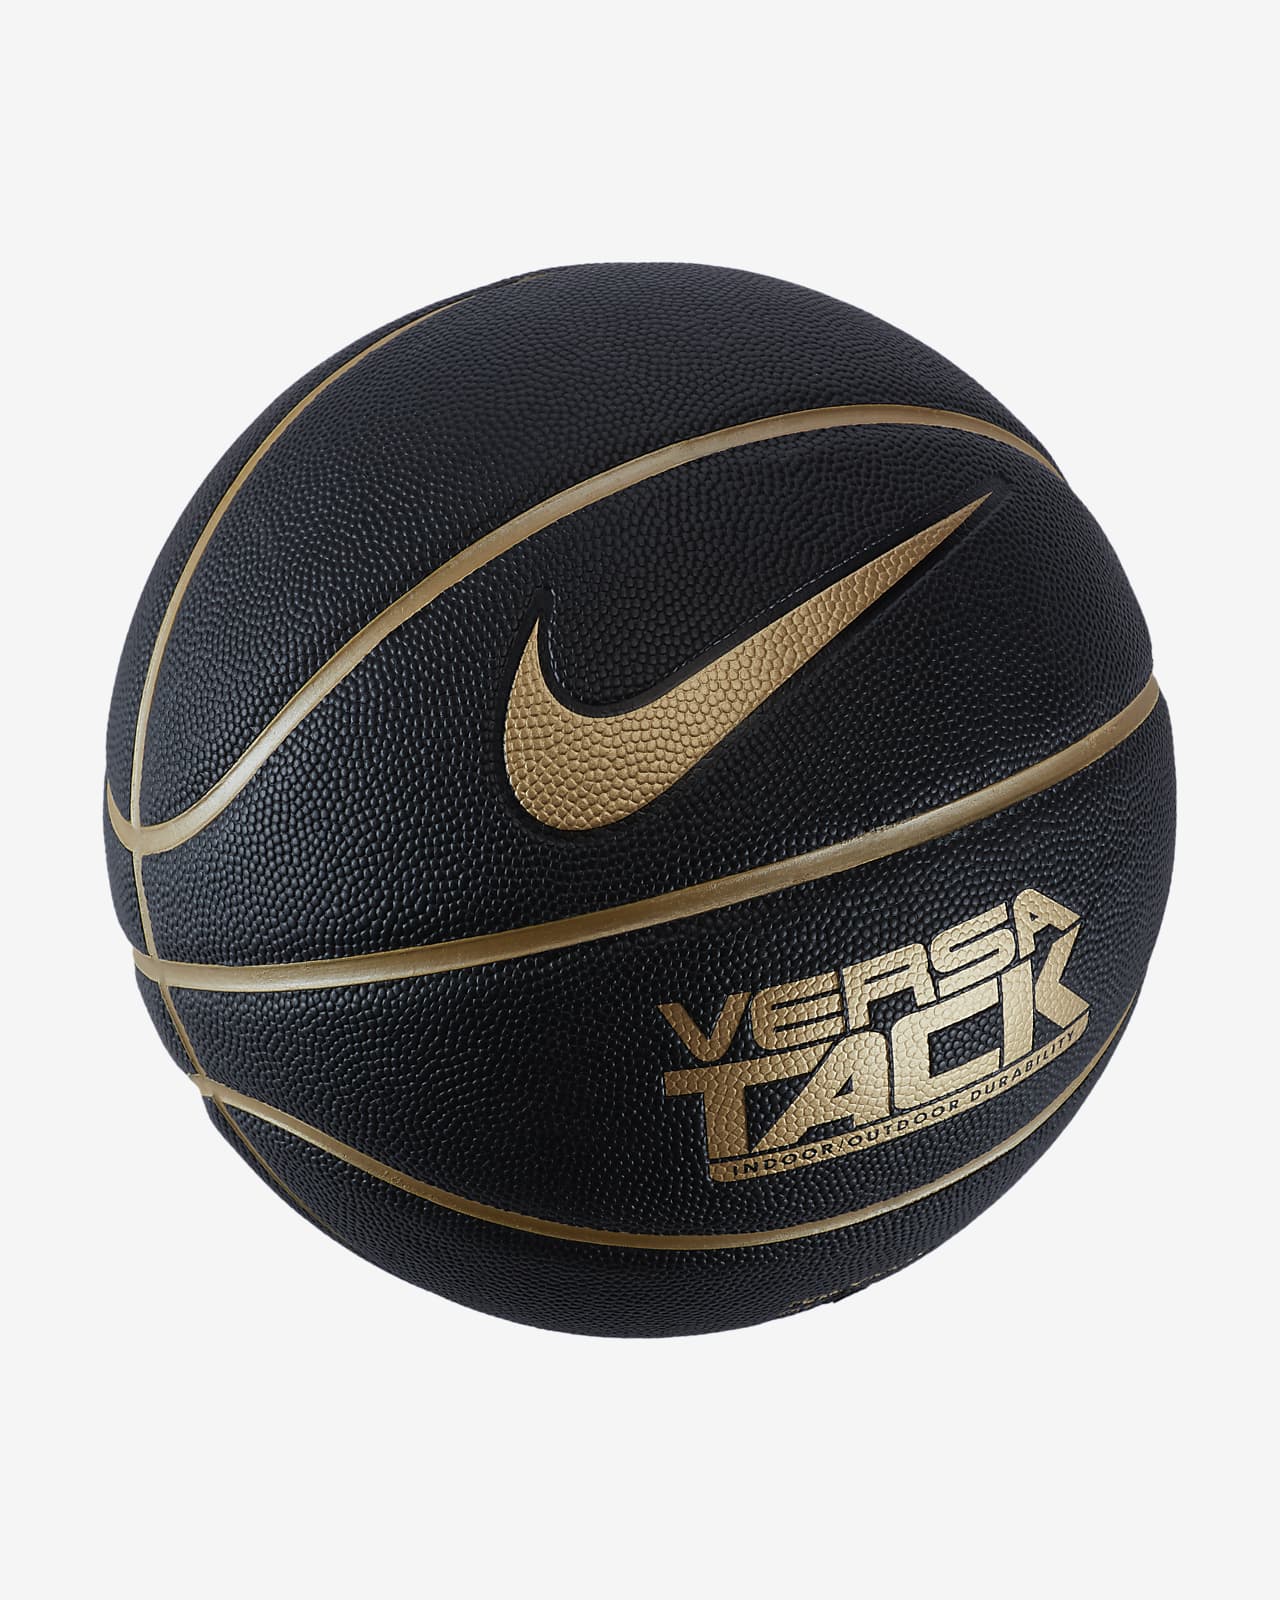 Balón de básquetbol Nike Versa Tack 8P. Nike.com